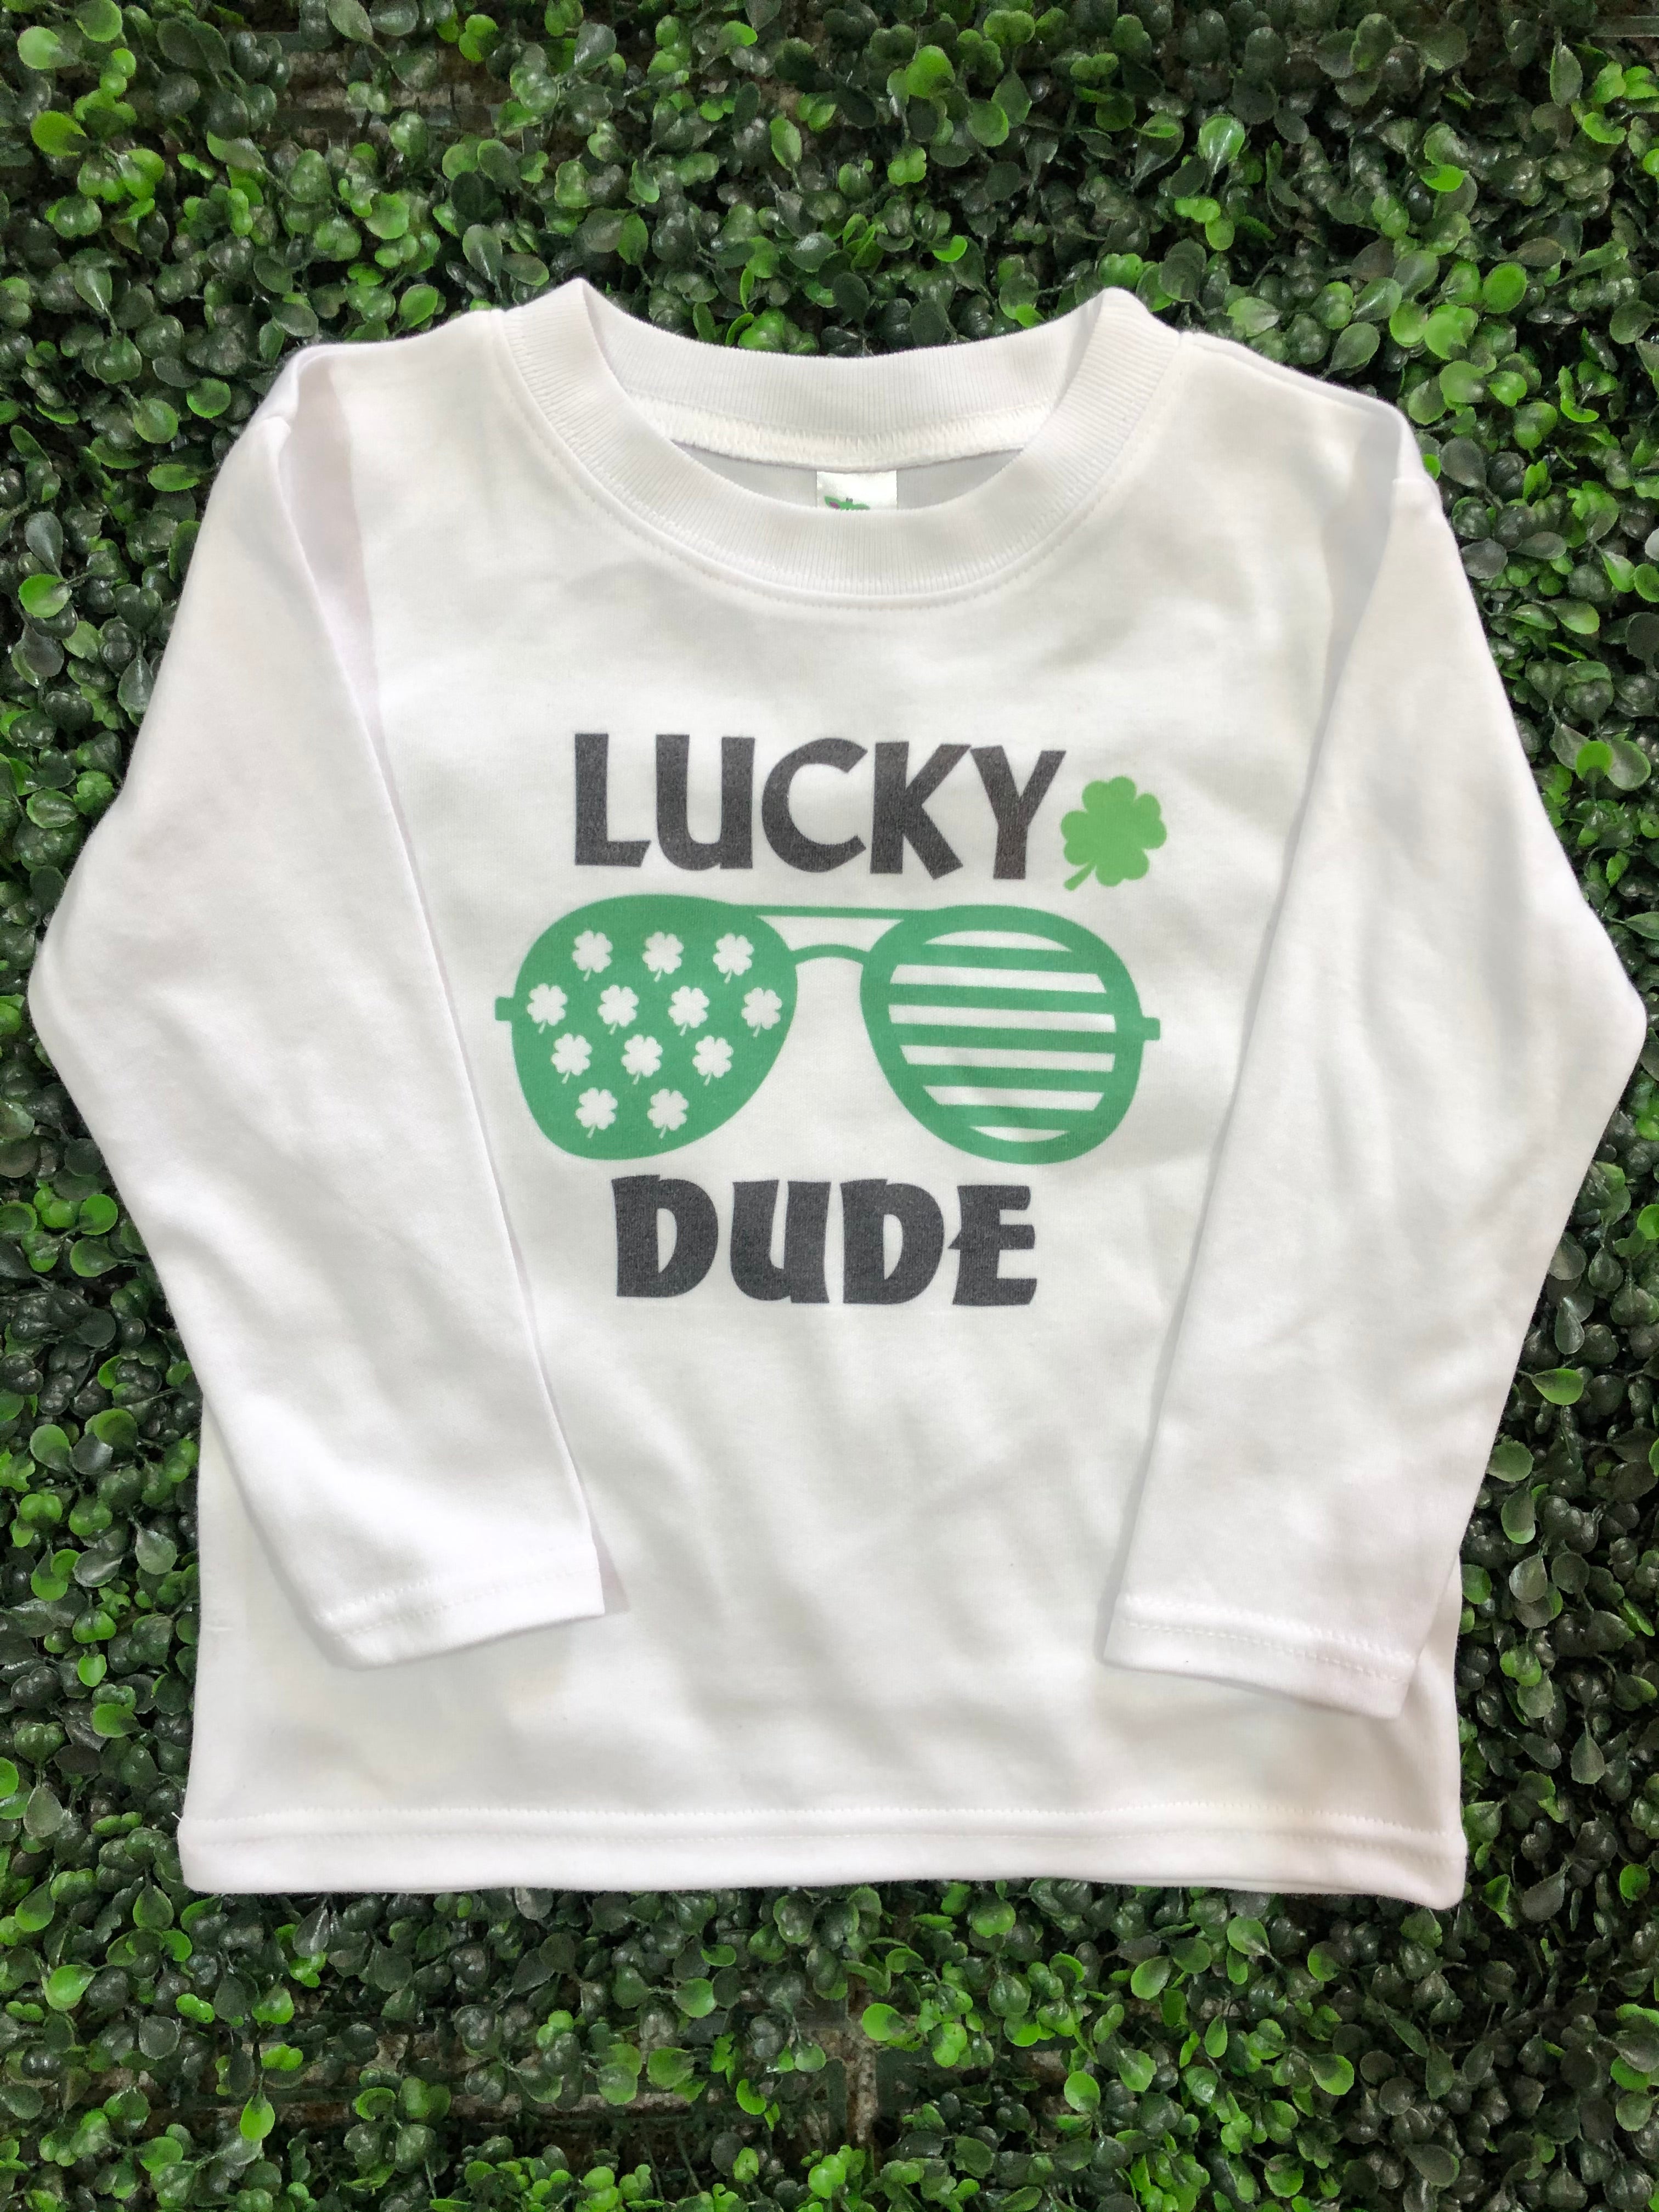 Lucky Dude Top Design